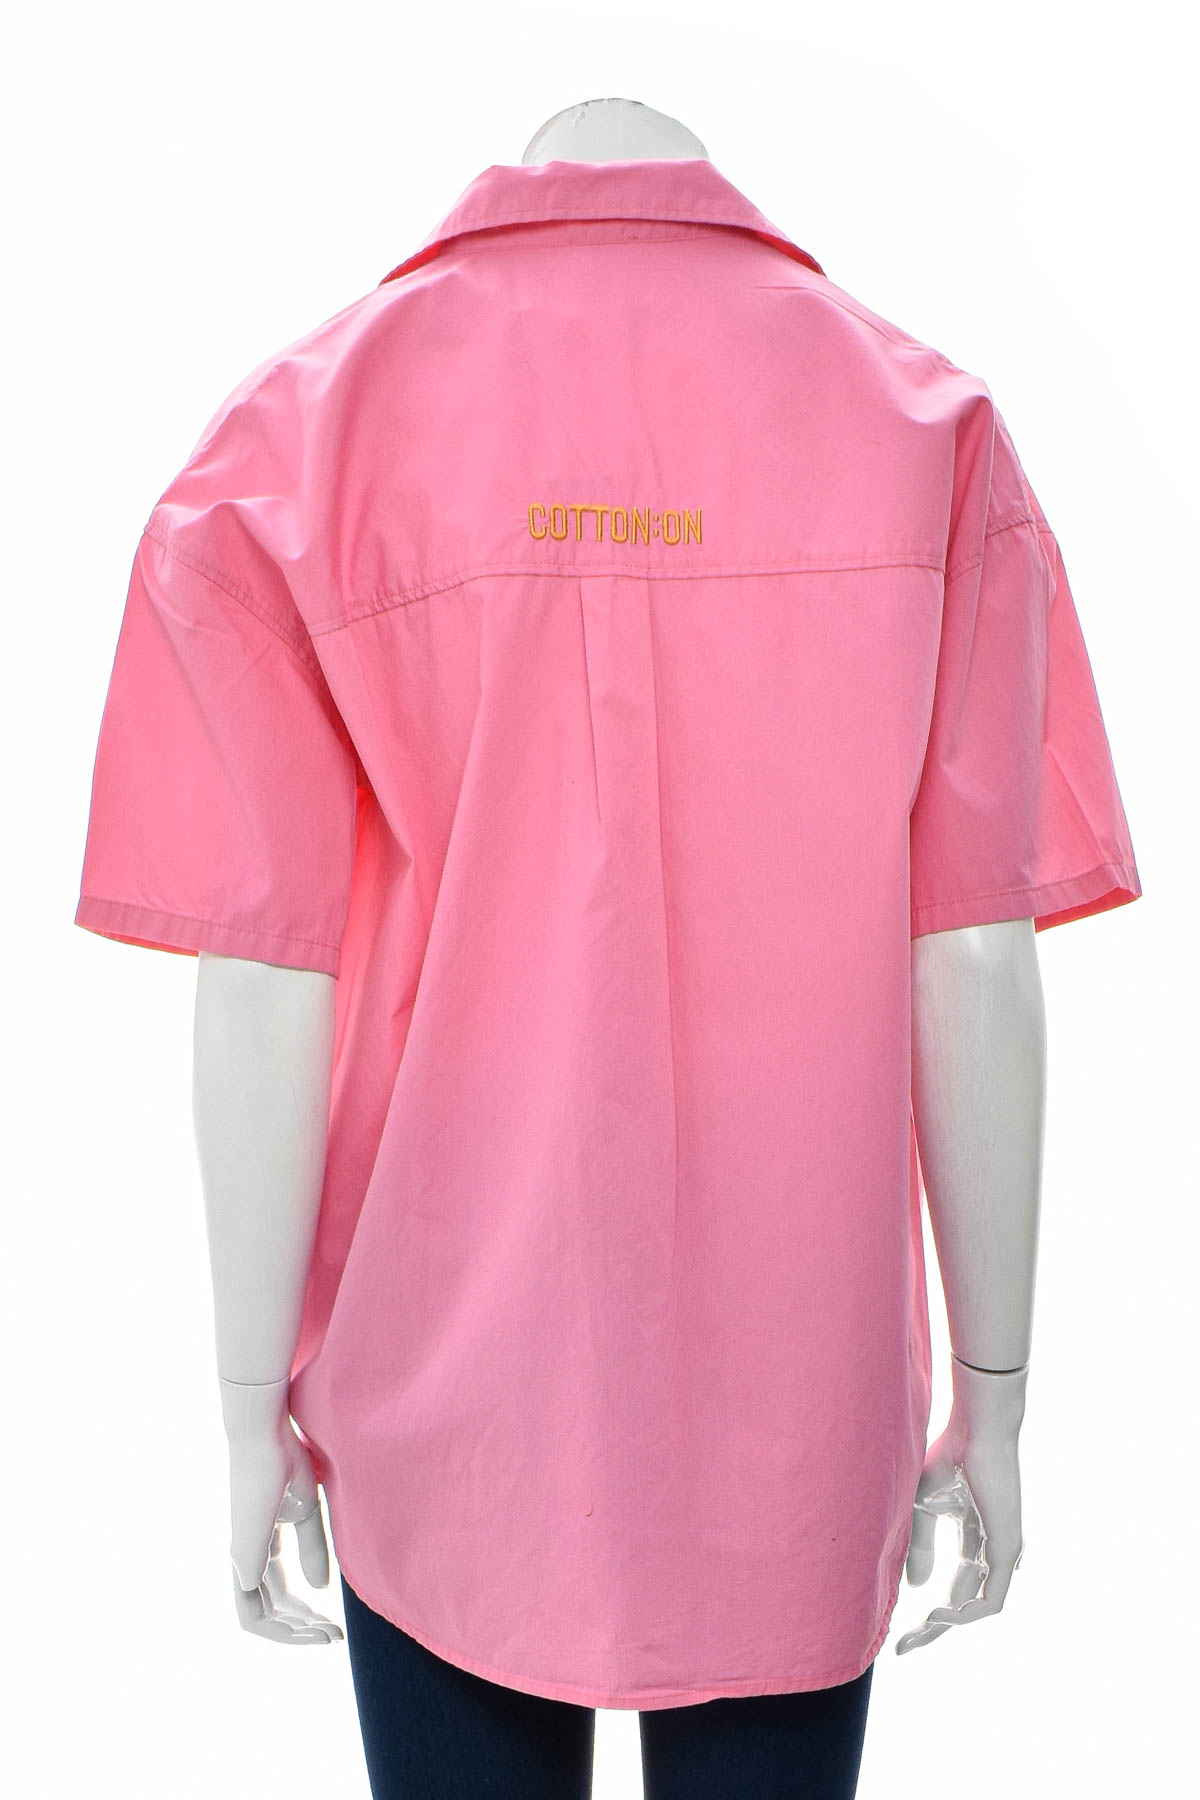 Γυναικείо πουκάμισο - COTTON:ON - 1